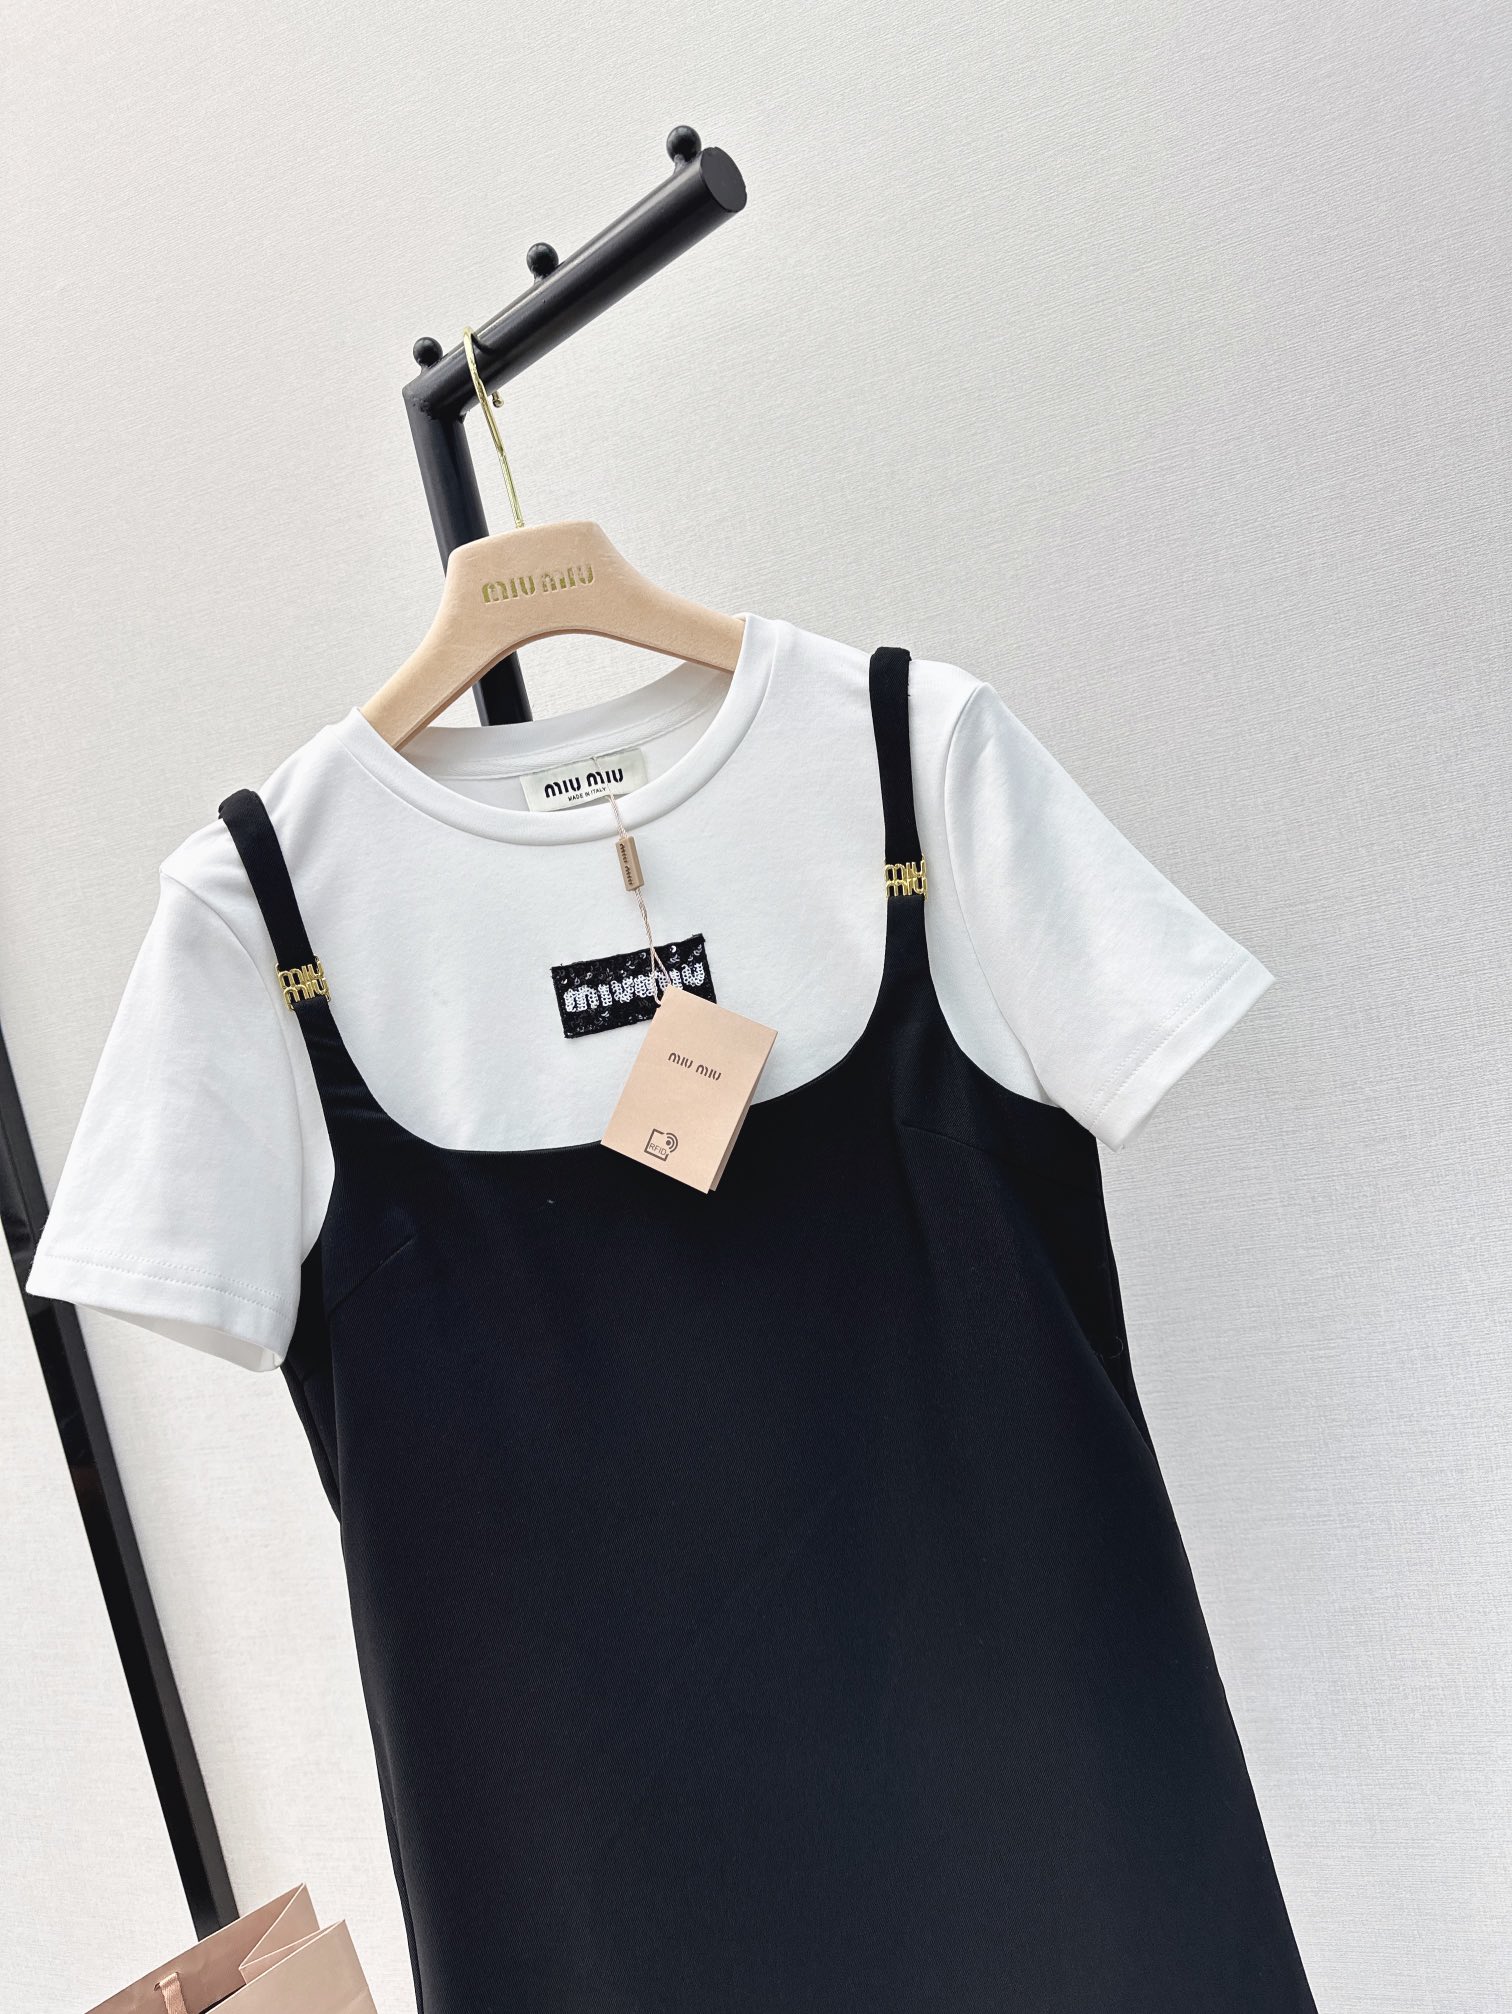 时髦感裙子Miu24Ss春夏最新款假两件拼接设计连衣裙时髦感在线经典黑白撞色假两件做法上身轻松减龄休闲显